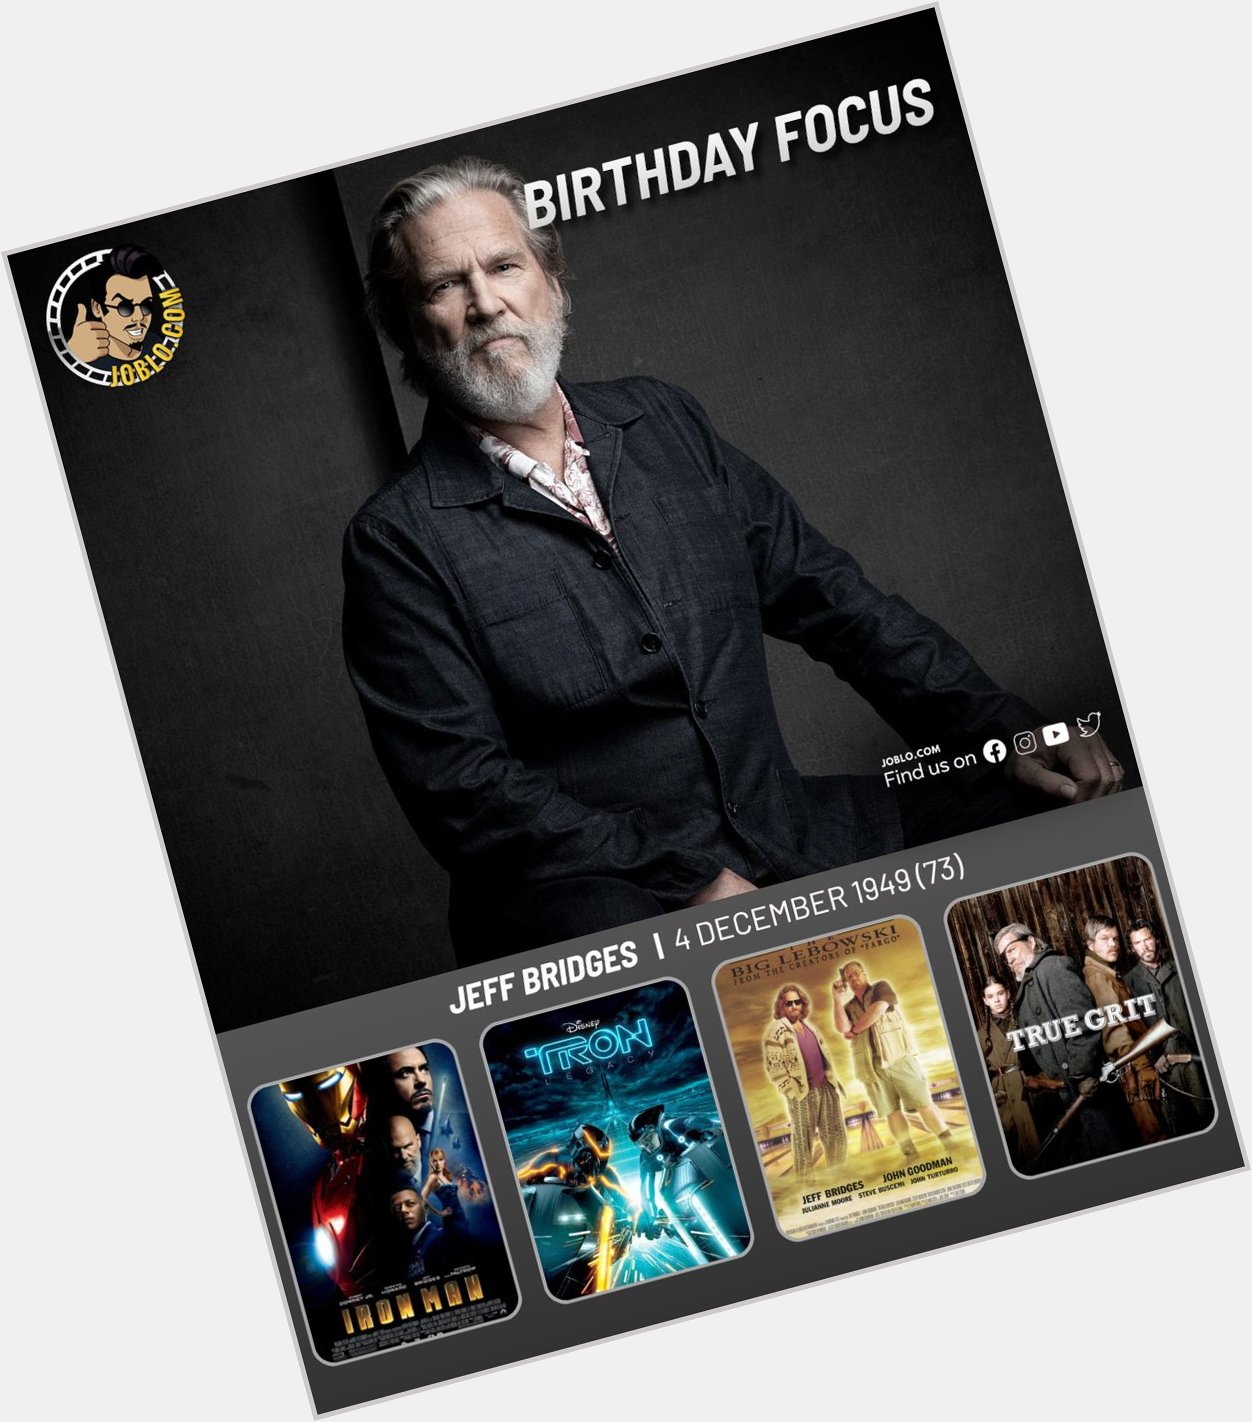 Happy birthday Jeff Bridges!  